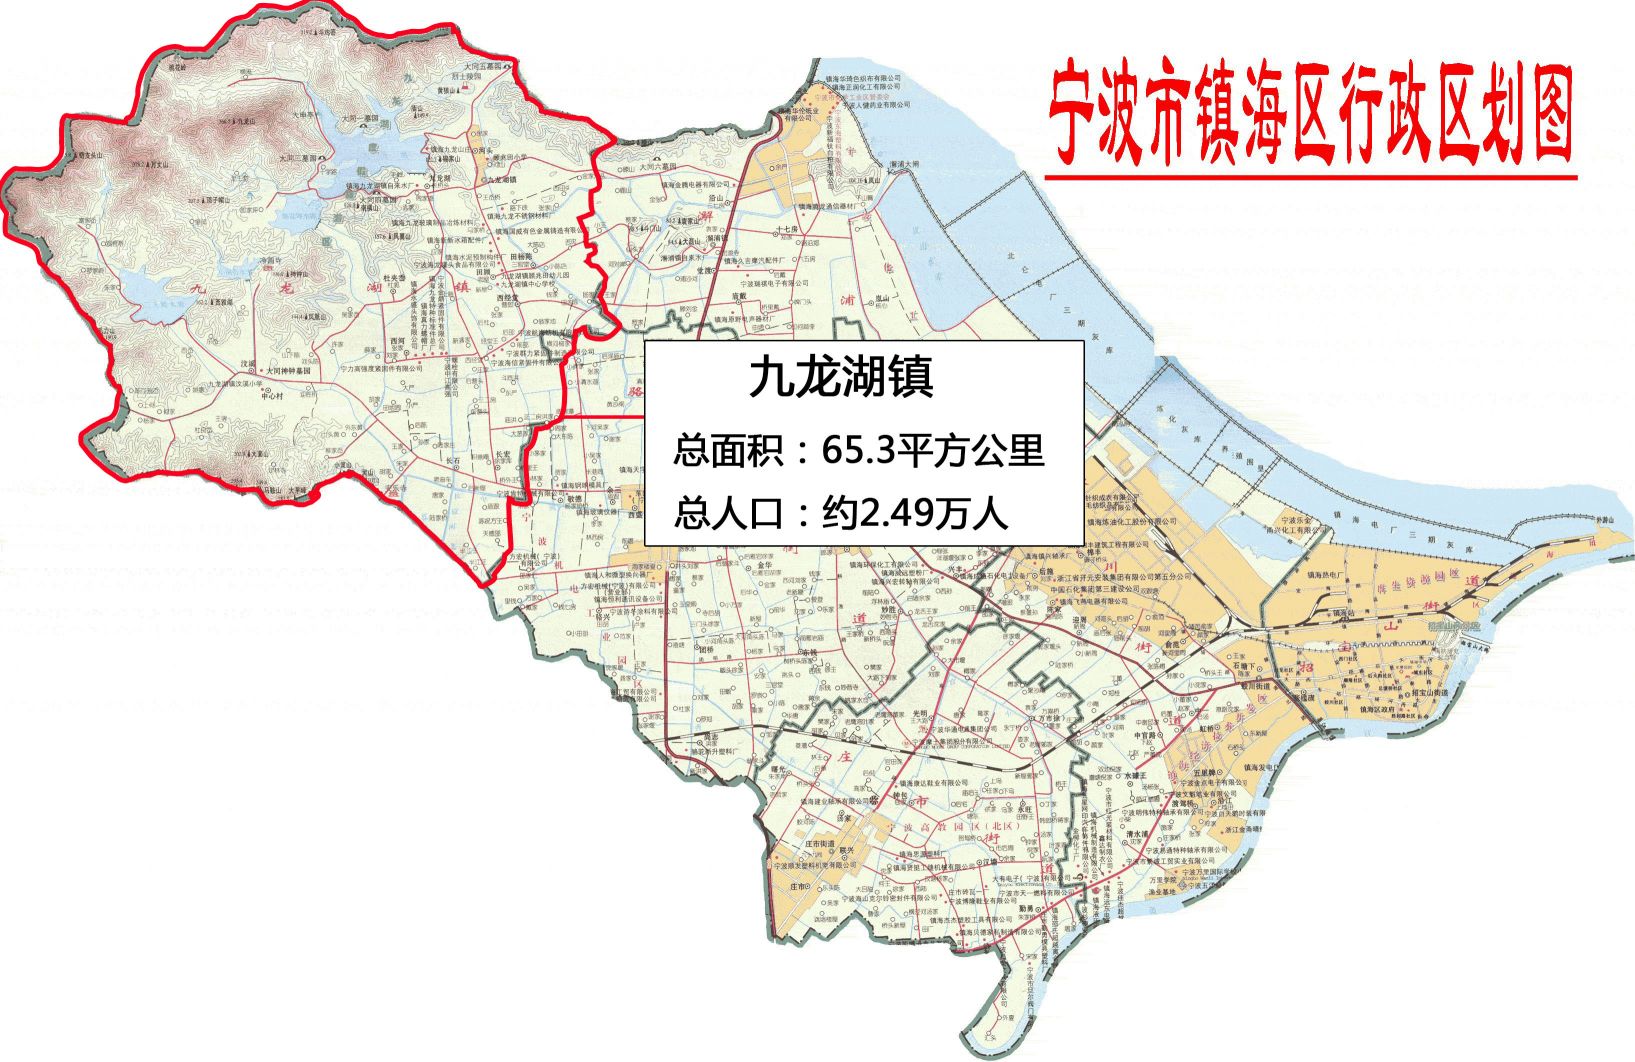 地图全图高清版(点击可查看大图)      九龙湖镇   是浙江省宁波市